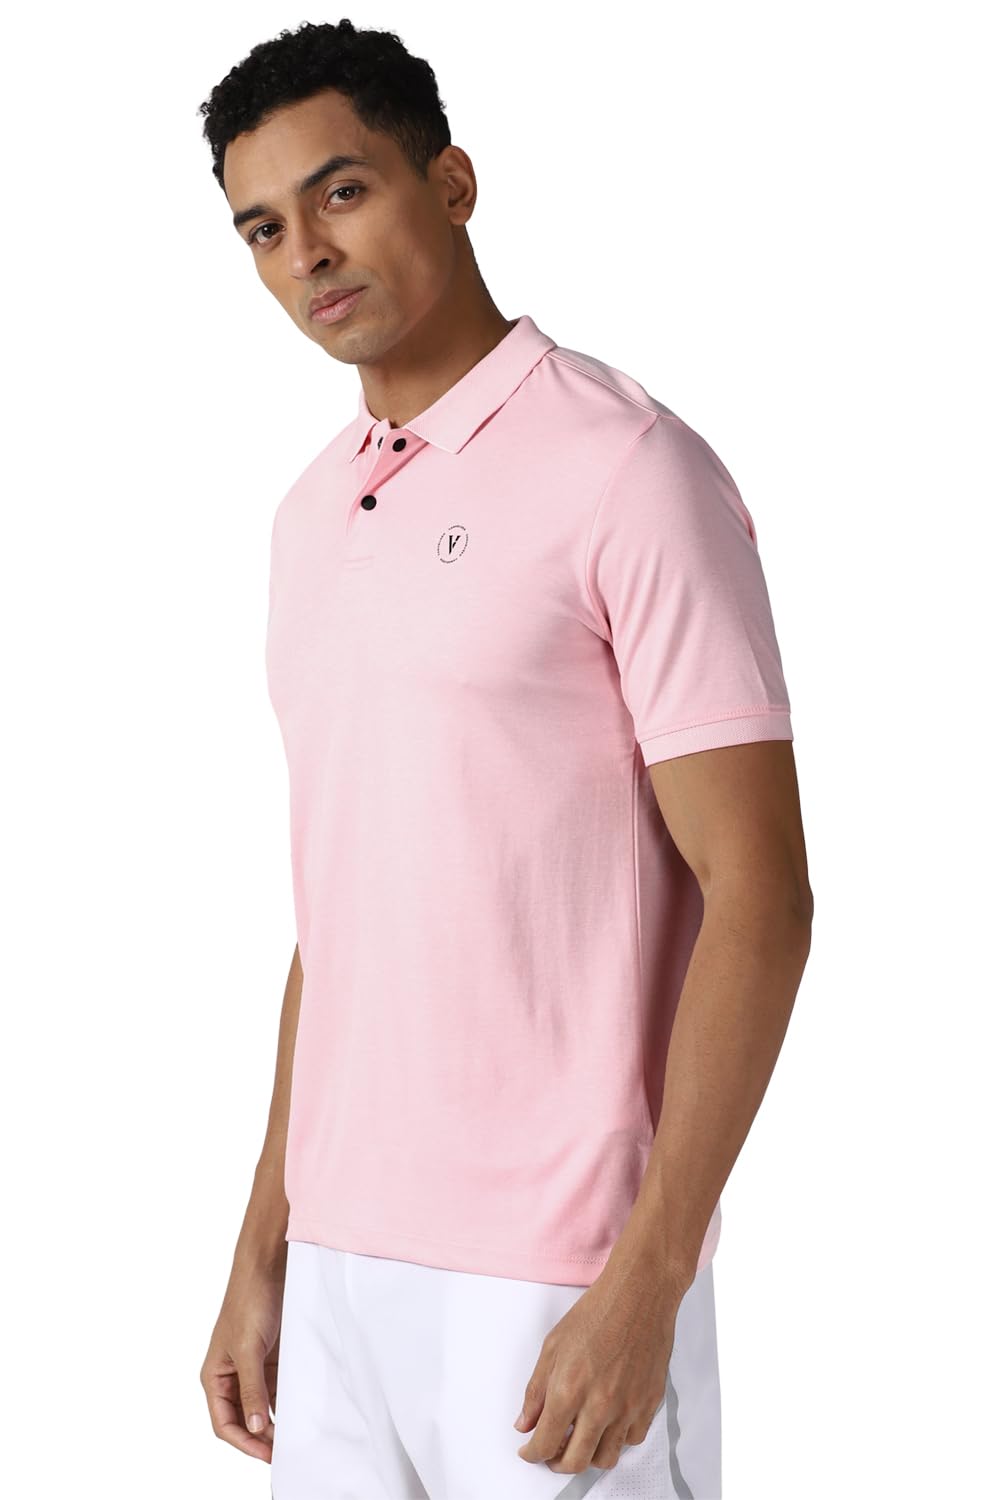 Van Heusen Men's Regular Fit T-Shirt (VFKPARGFN22680_Pink